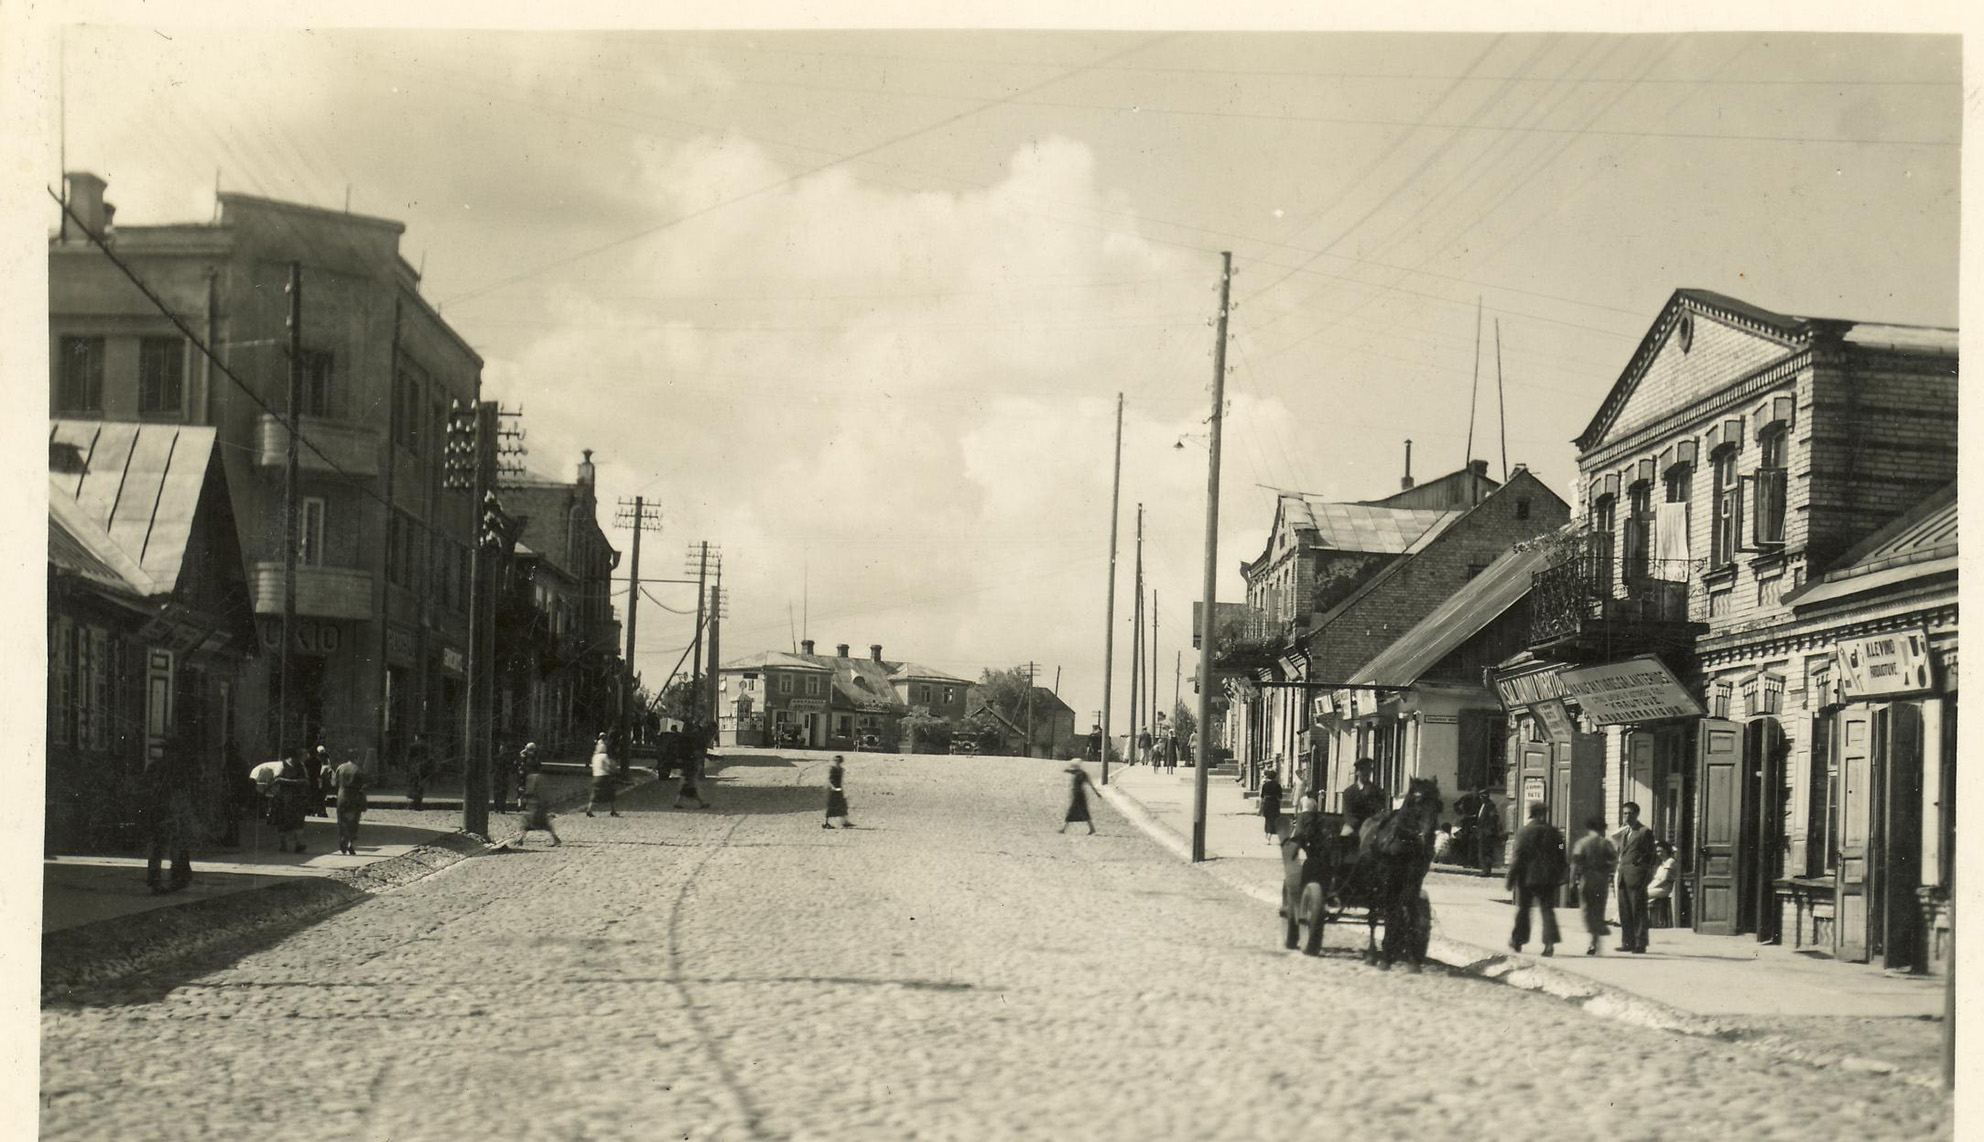 Vilniaus gatvė, Zimavičienės mūras kairėje. Nuotr. iš A. Antanevičiaus kolekcijos